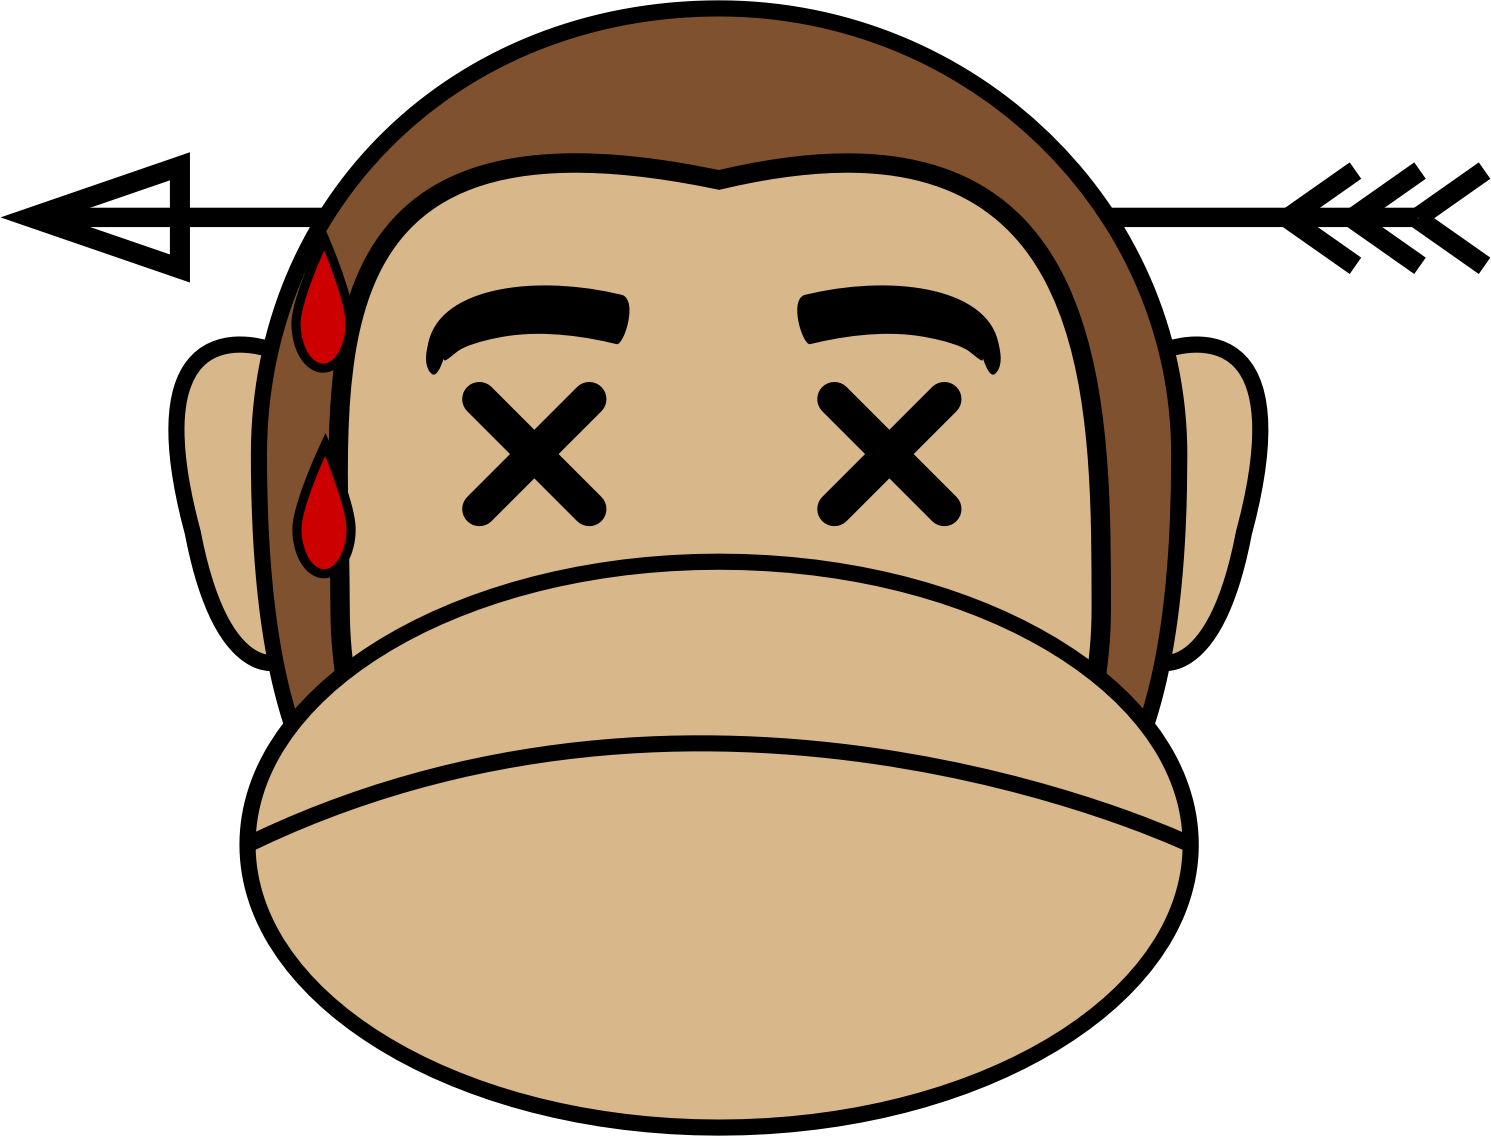 Monkey - Ape Emoji (1491x1136)